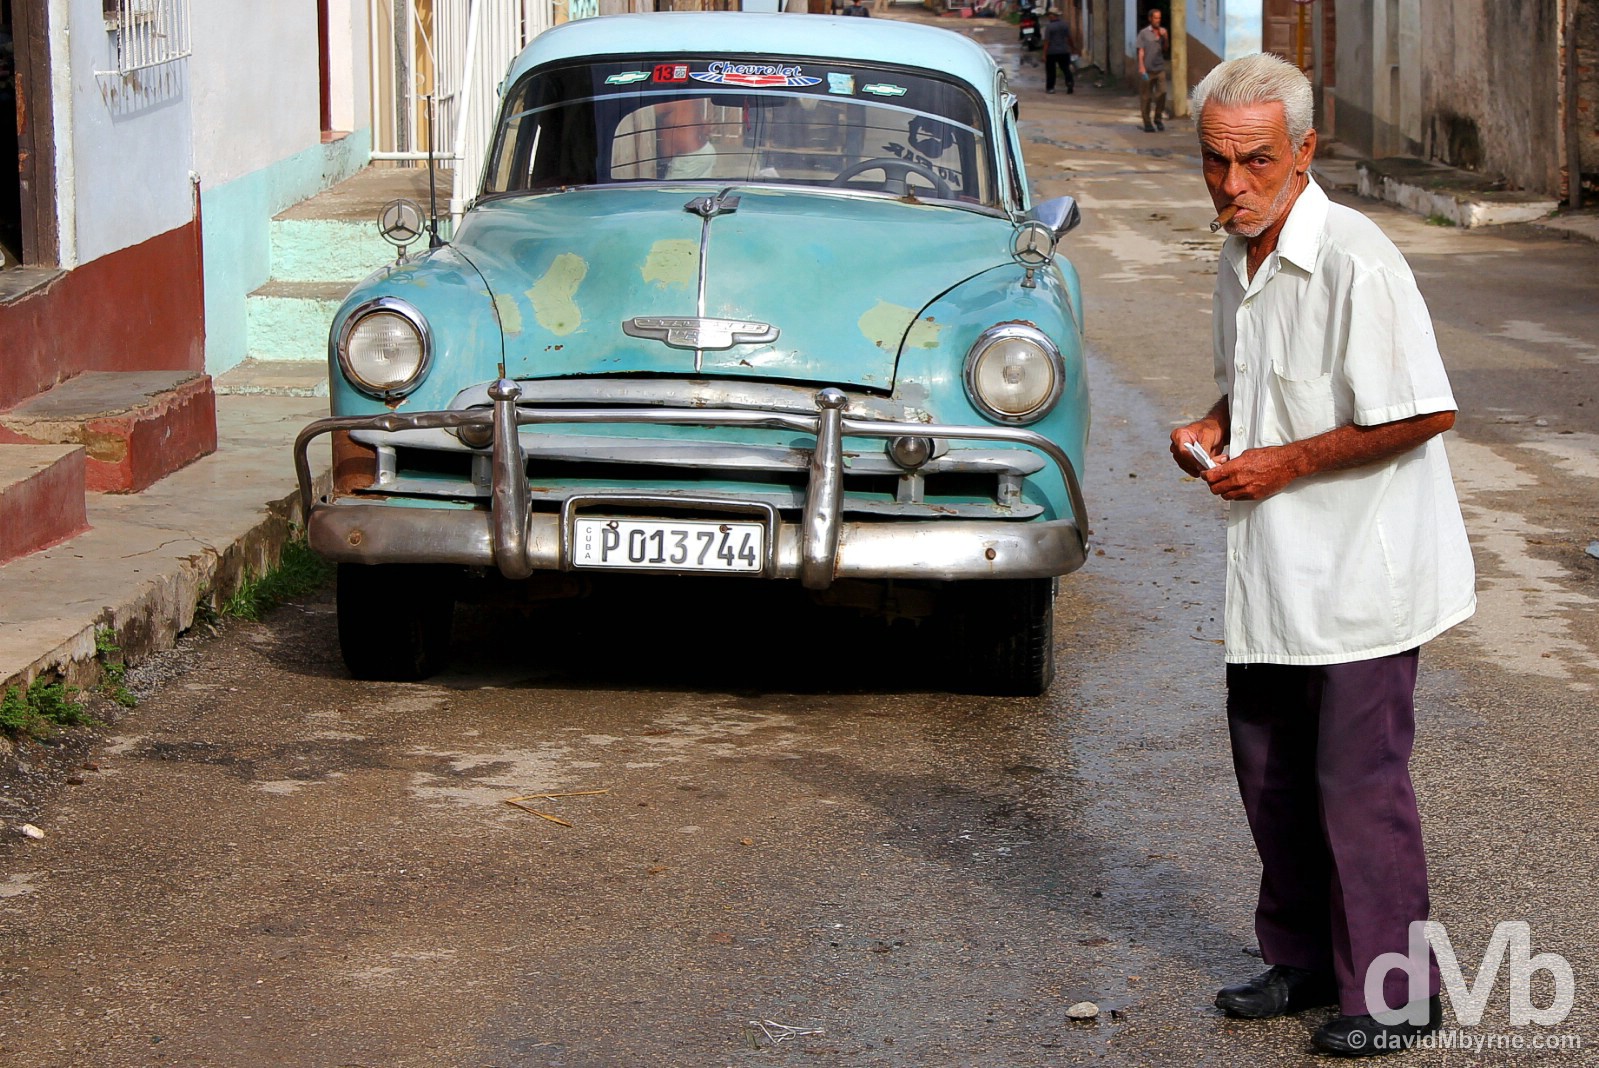 Trinidad, Cuba. May 5, 2015.